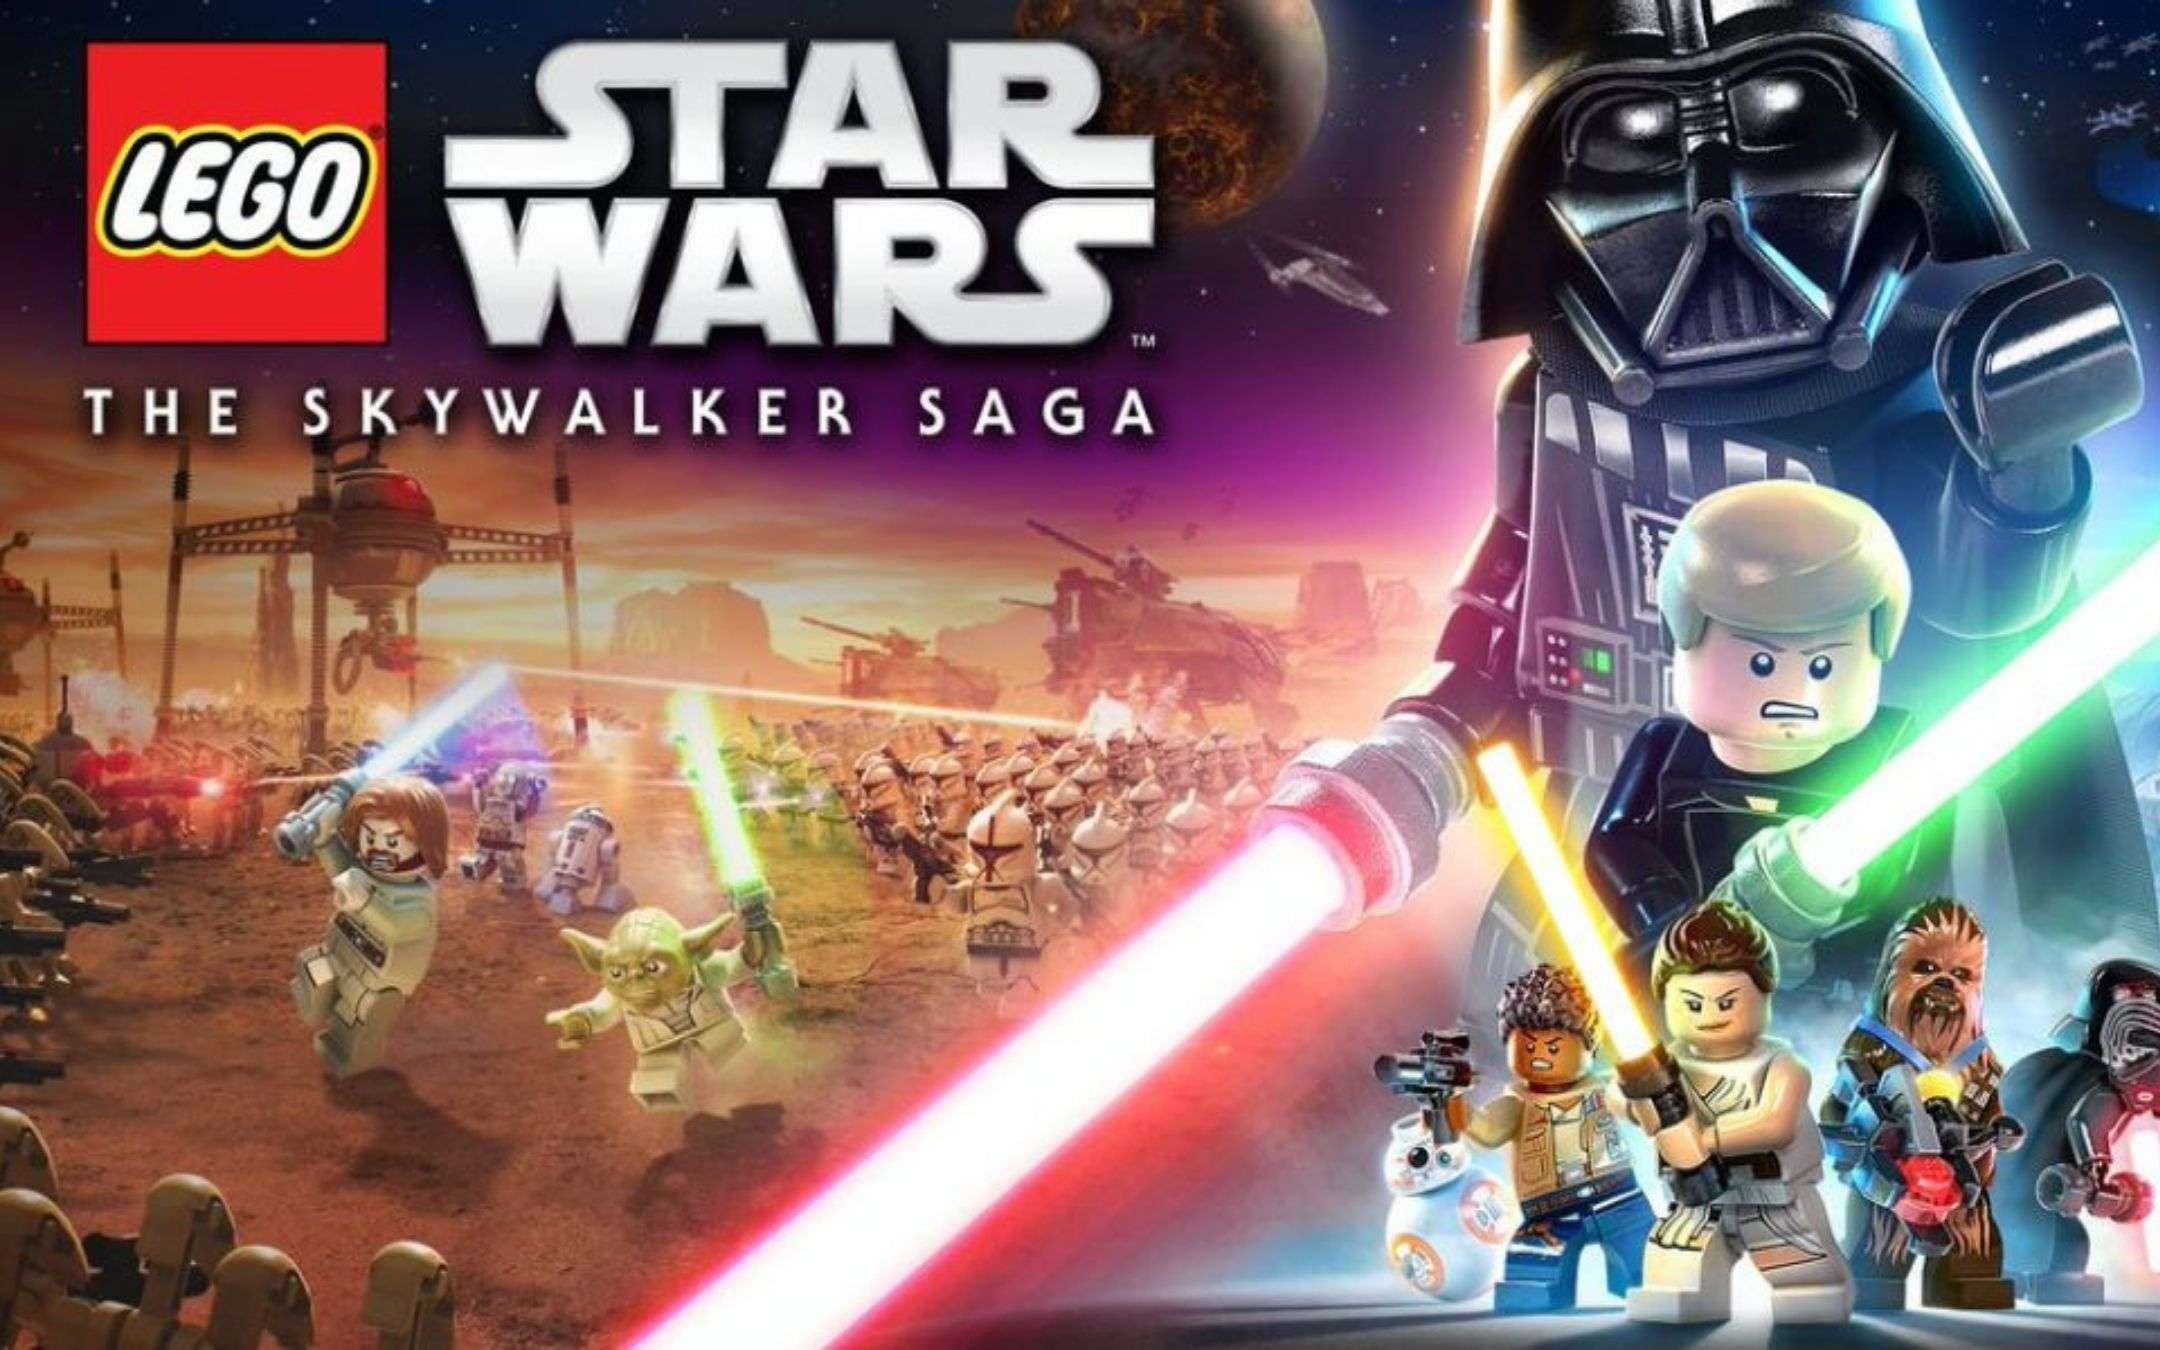 LEGO Star Wars come Cyberpunk: è in ritardo, di nuovo